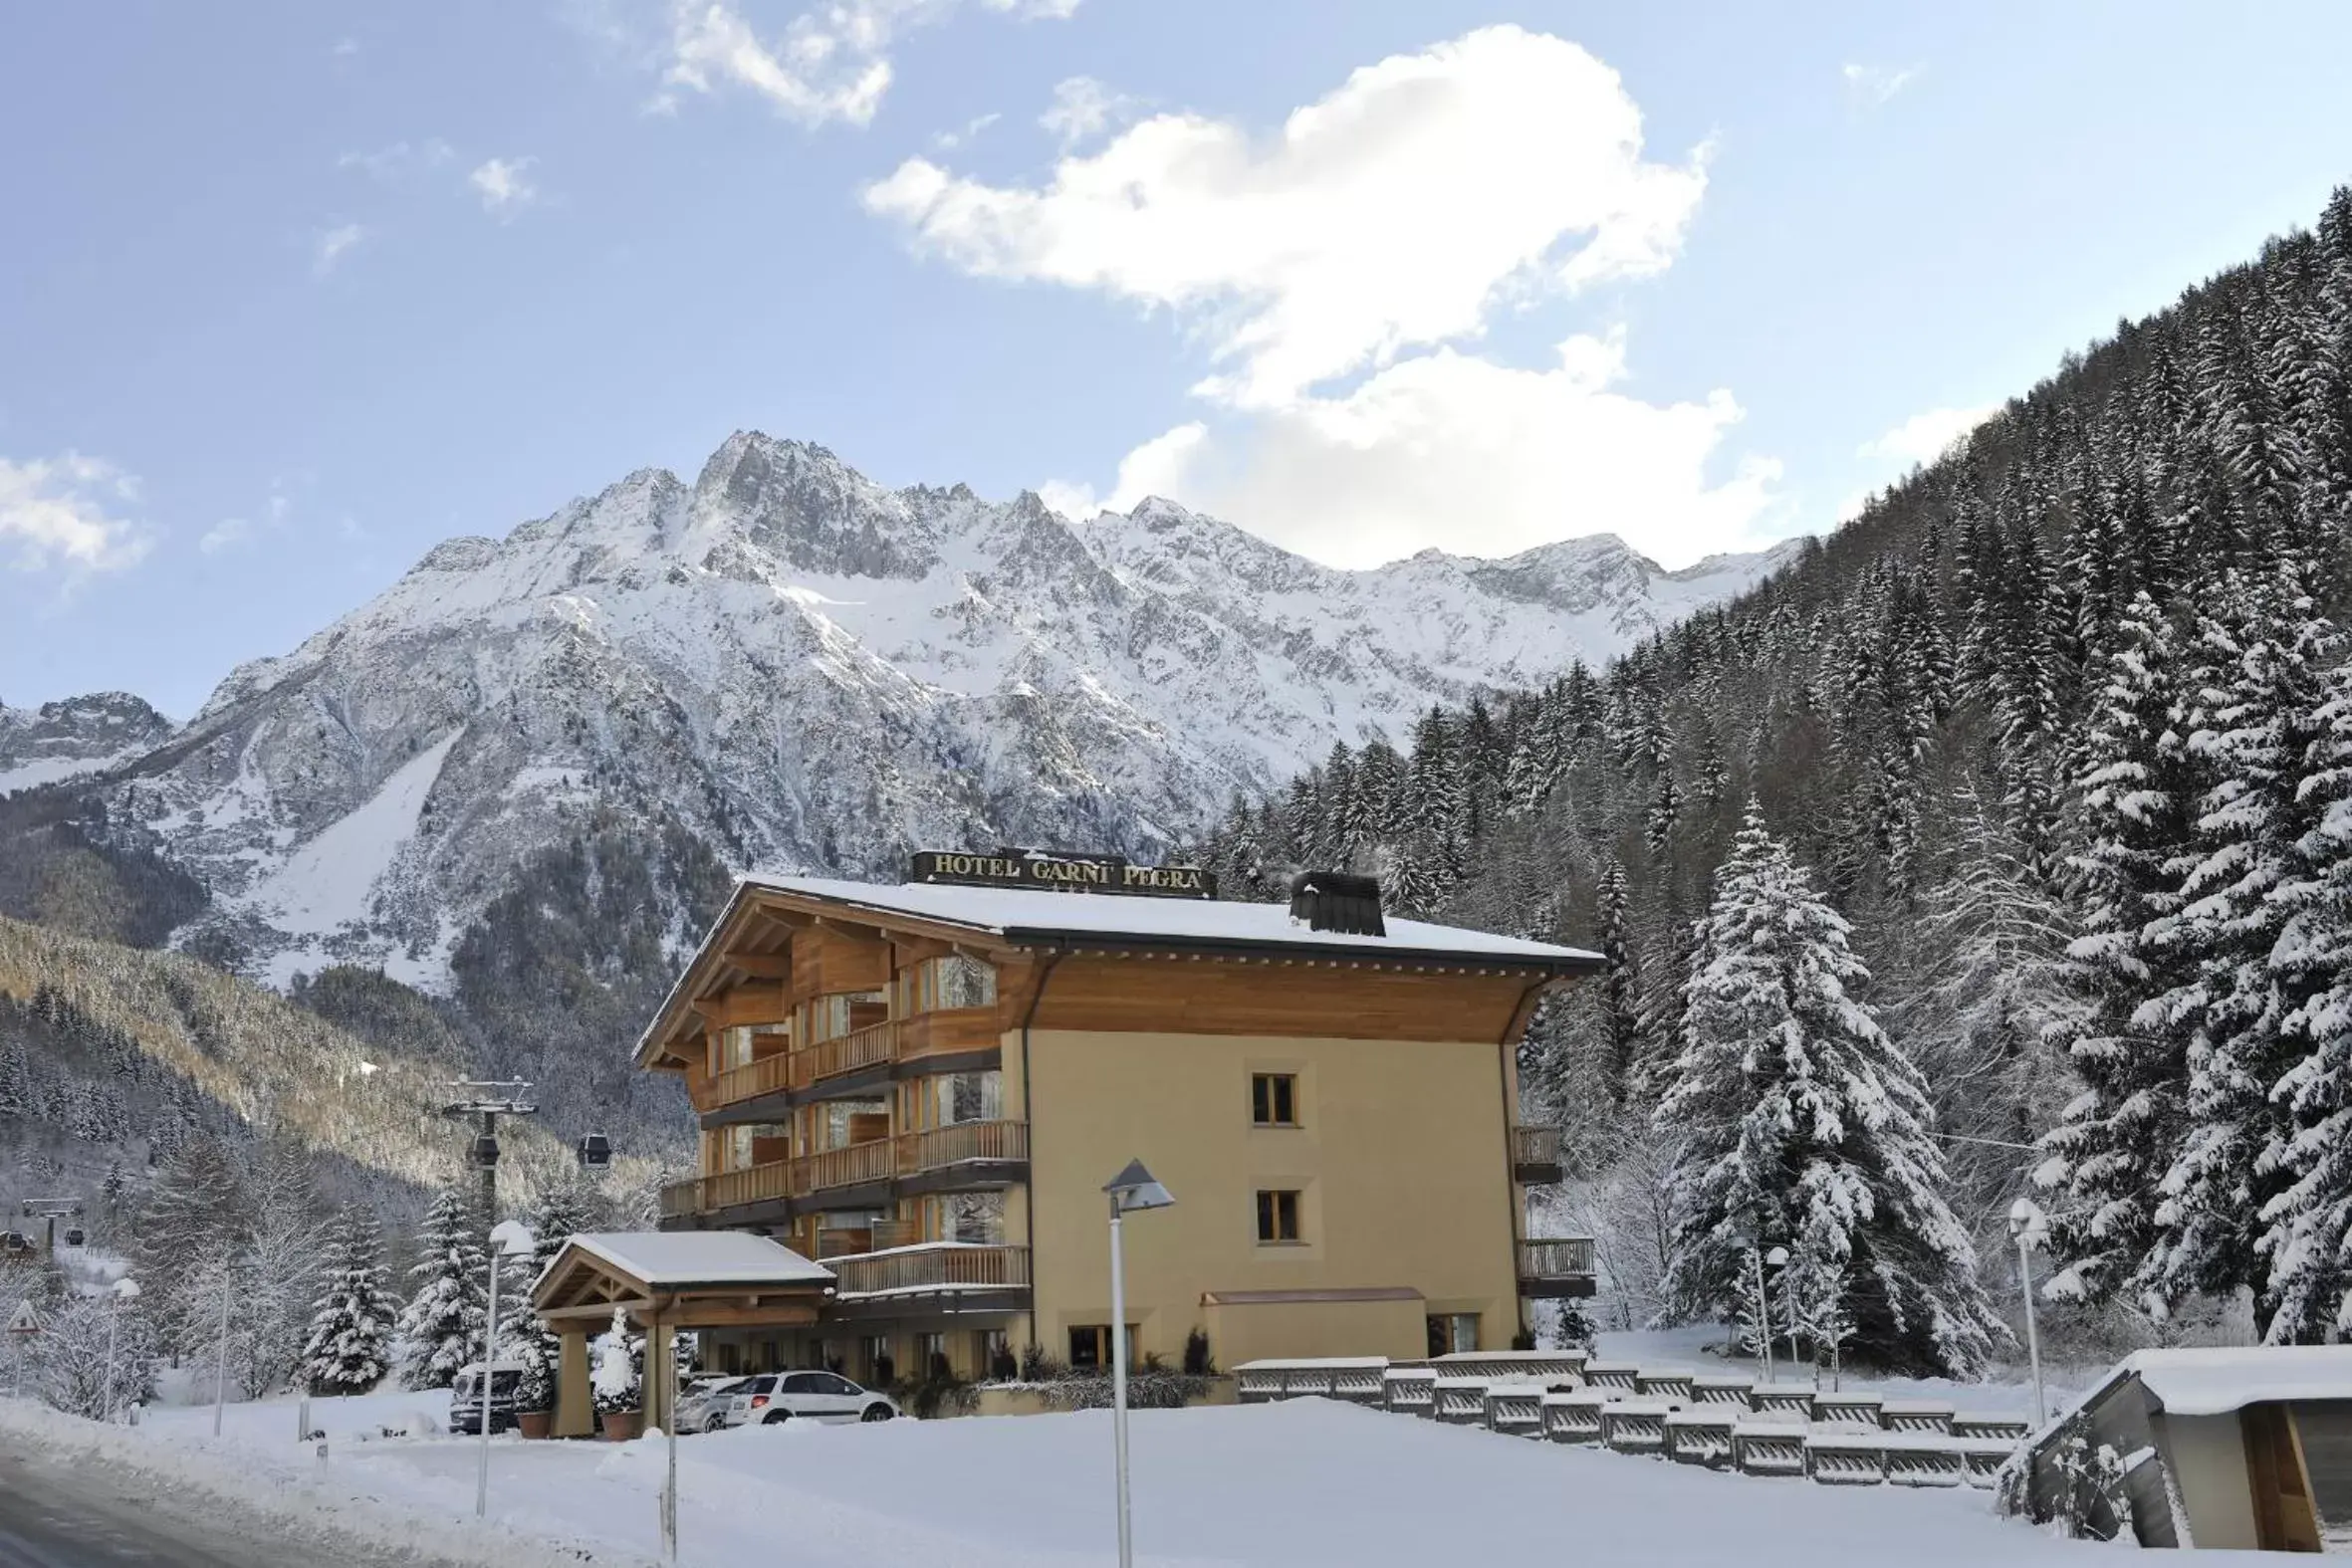 On site, Winter in Hotel Garni Pegrà